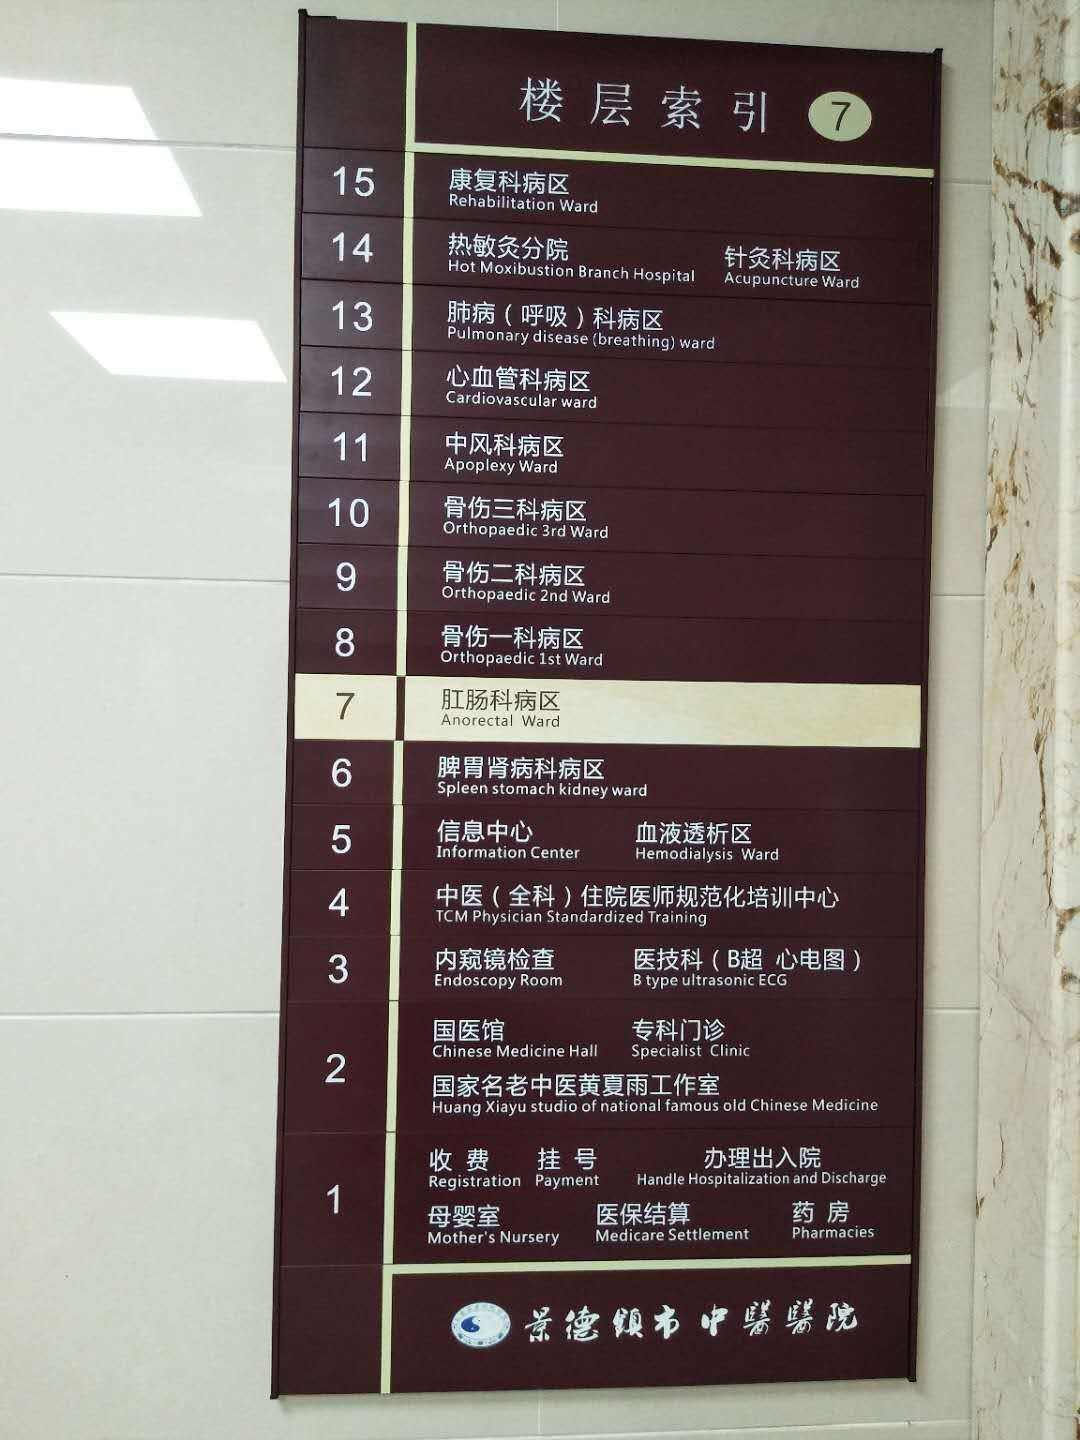 包含四惠中医医院挂号号贩子联系方式第一时间安排联系方式放心省心的词条